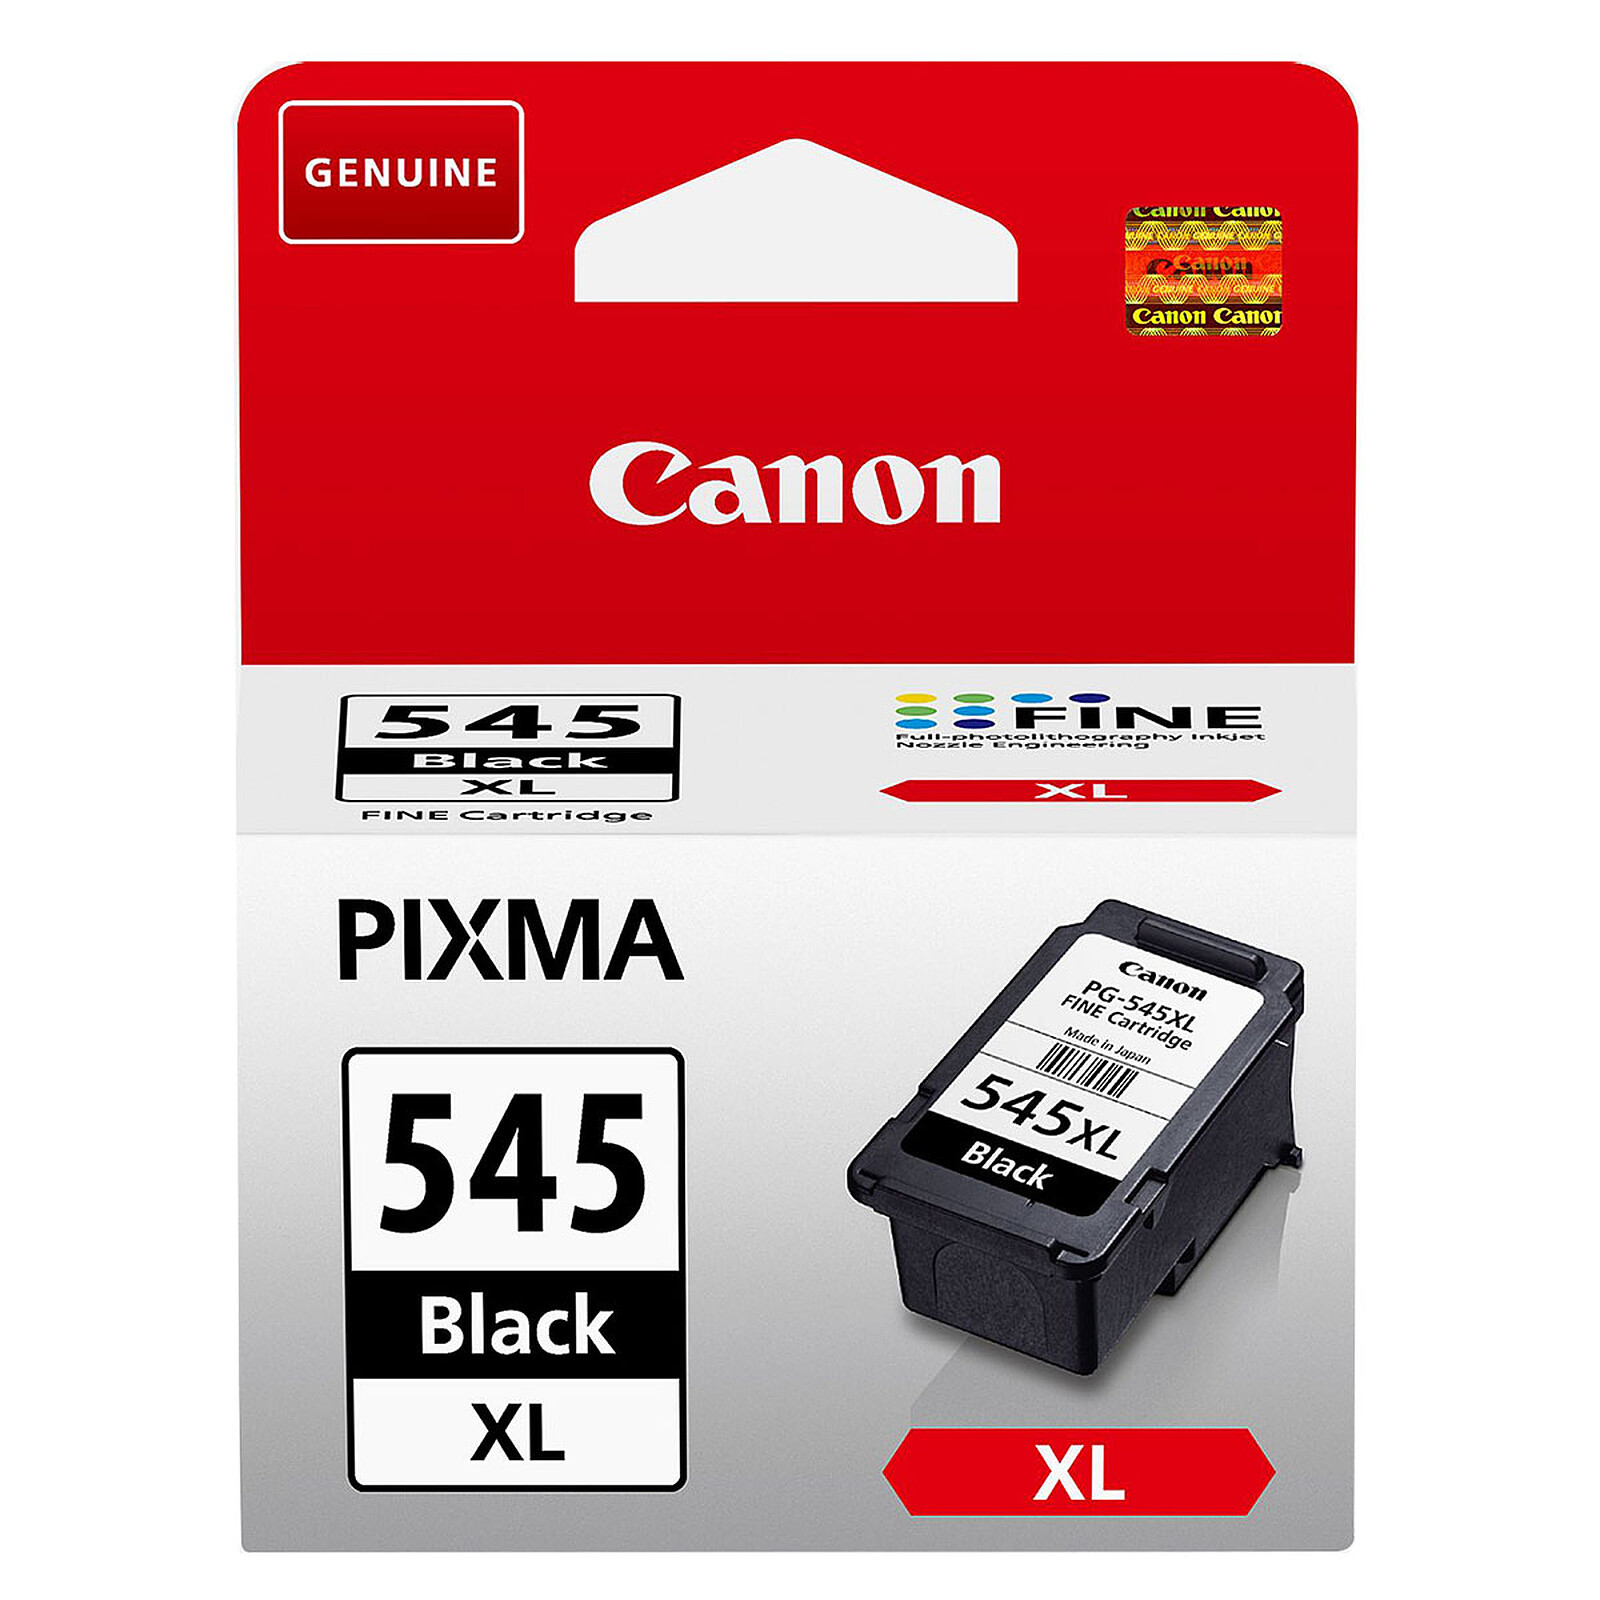 Cartouche compatible PG-545 XL (Noir) - Cartouche imprimante - LDLC